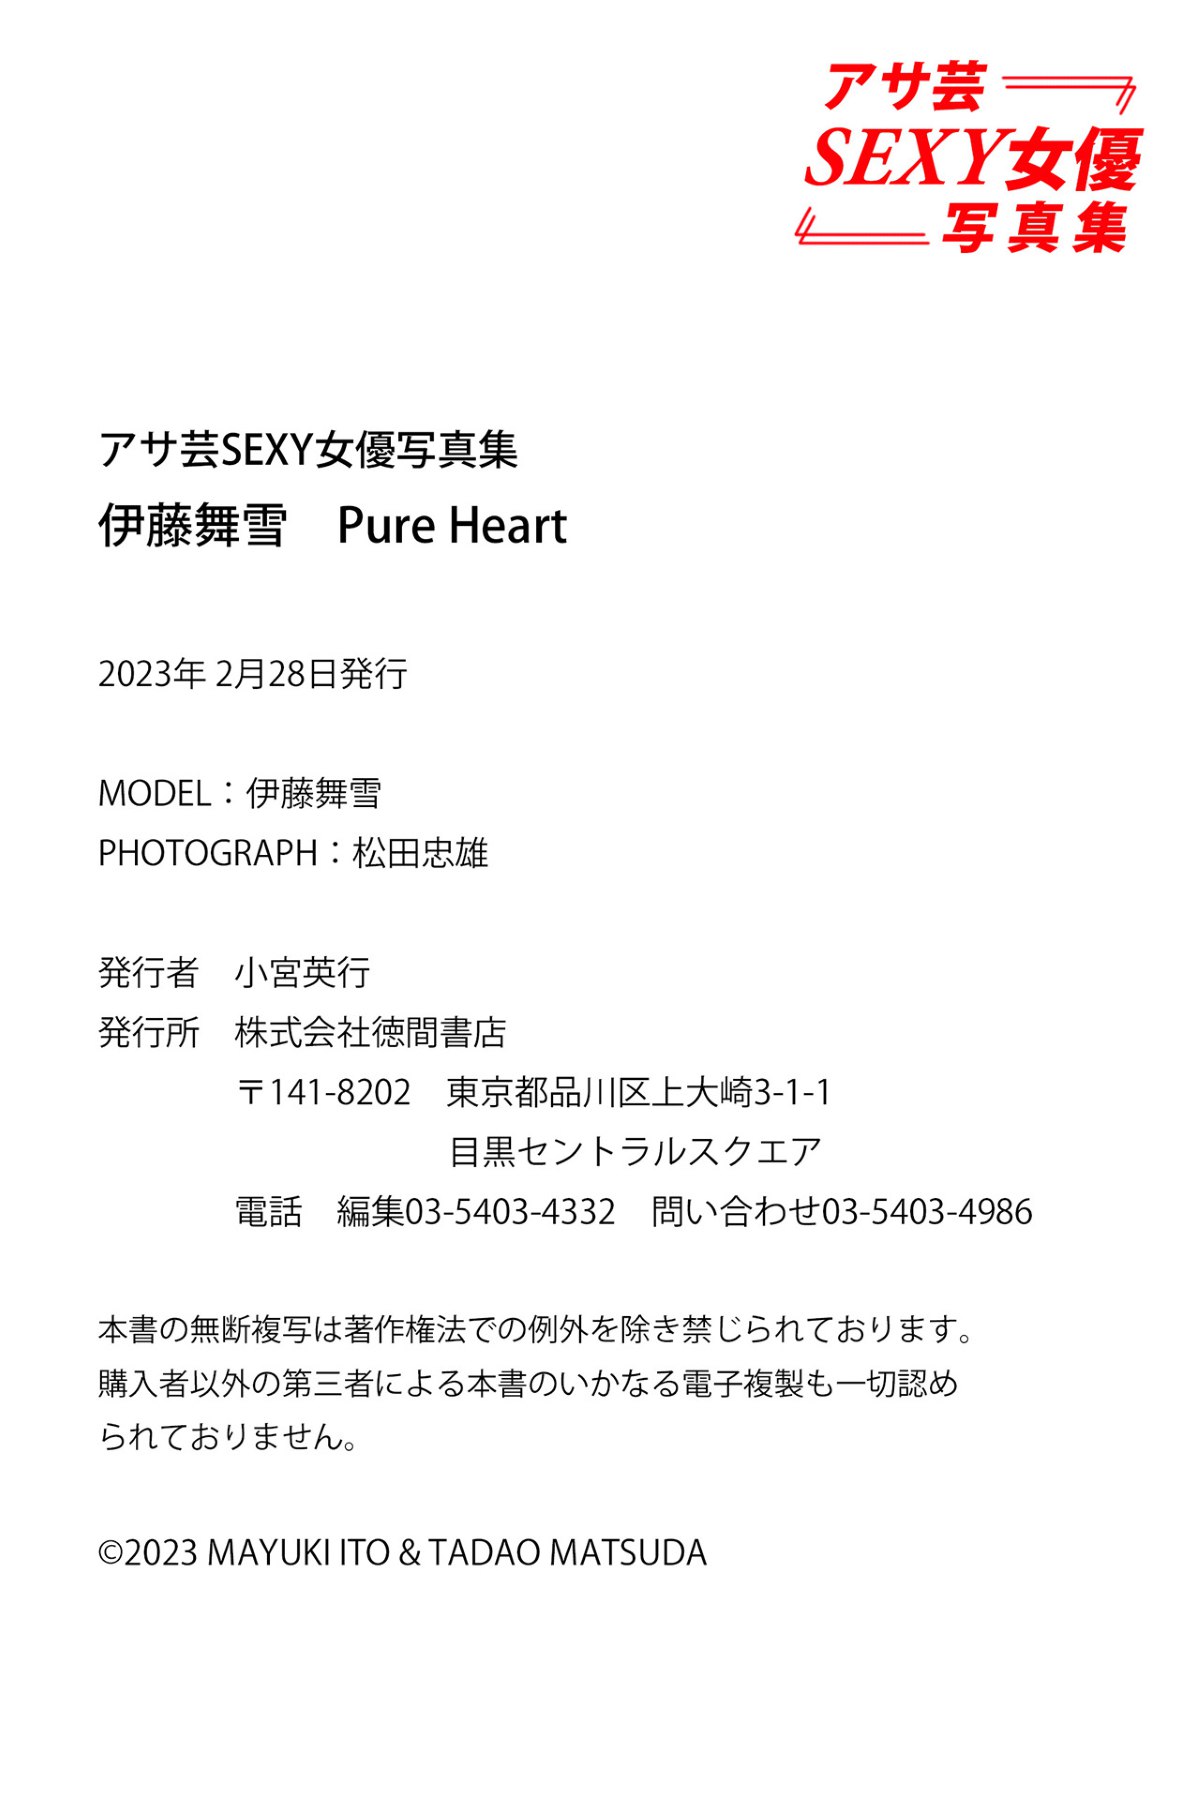 Photobook 2023 02 27 Mayuki Itou 伊藤舞雪 Pure Heart Asa Geisha Sexy Actress Photobook 0051 1184585090.jpg